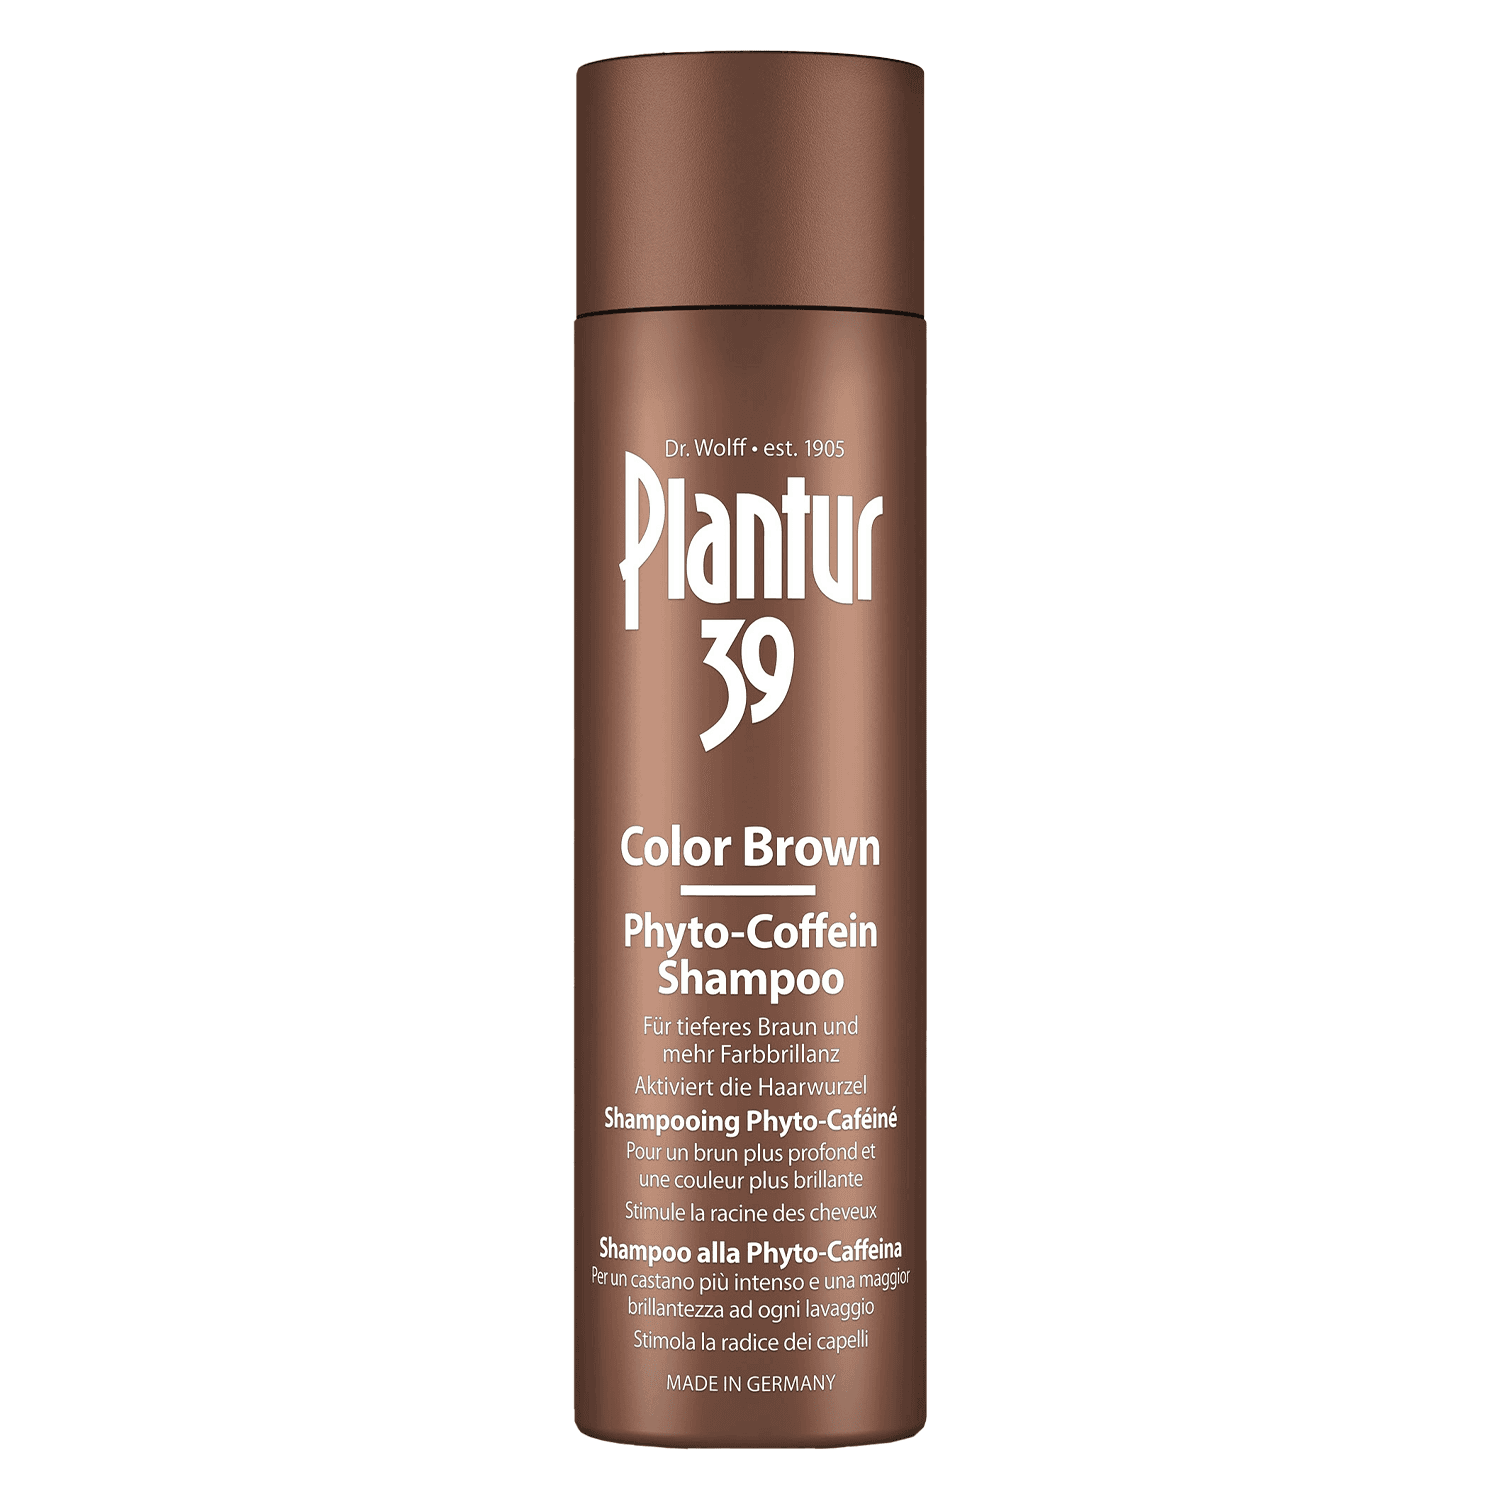 Plantur 39 - Colour Brown Phyto-Caffeine Shampoo